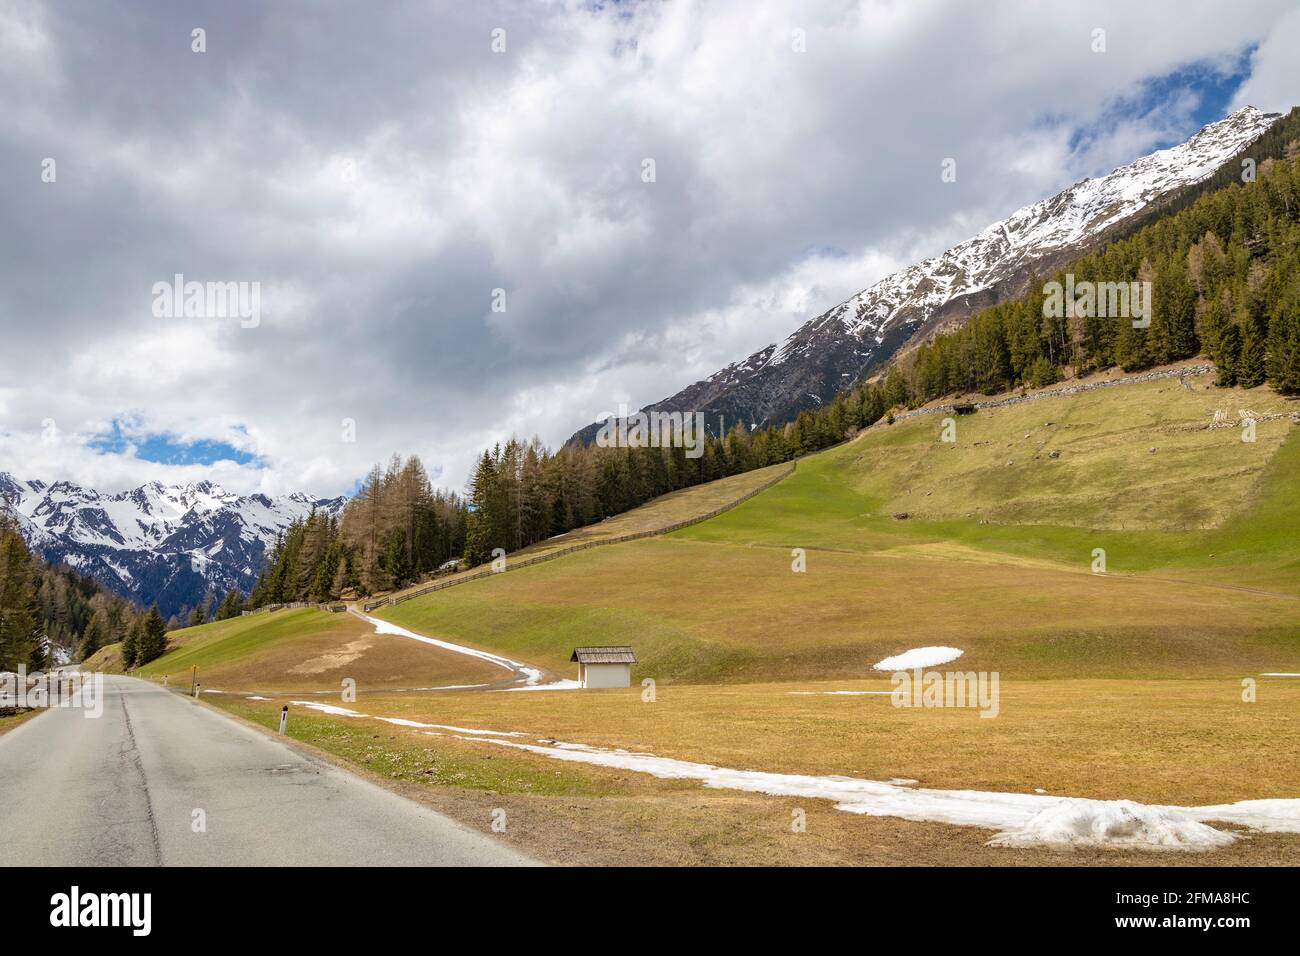 Kleines Dorf Gries im Sulztal über Laengenfeld im Ötztal, Tirol, Österreich  Stockfotografie - Alamy